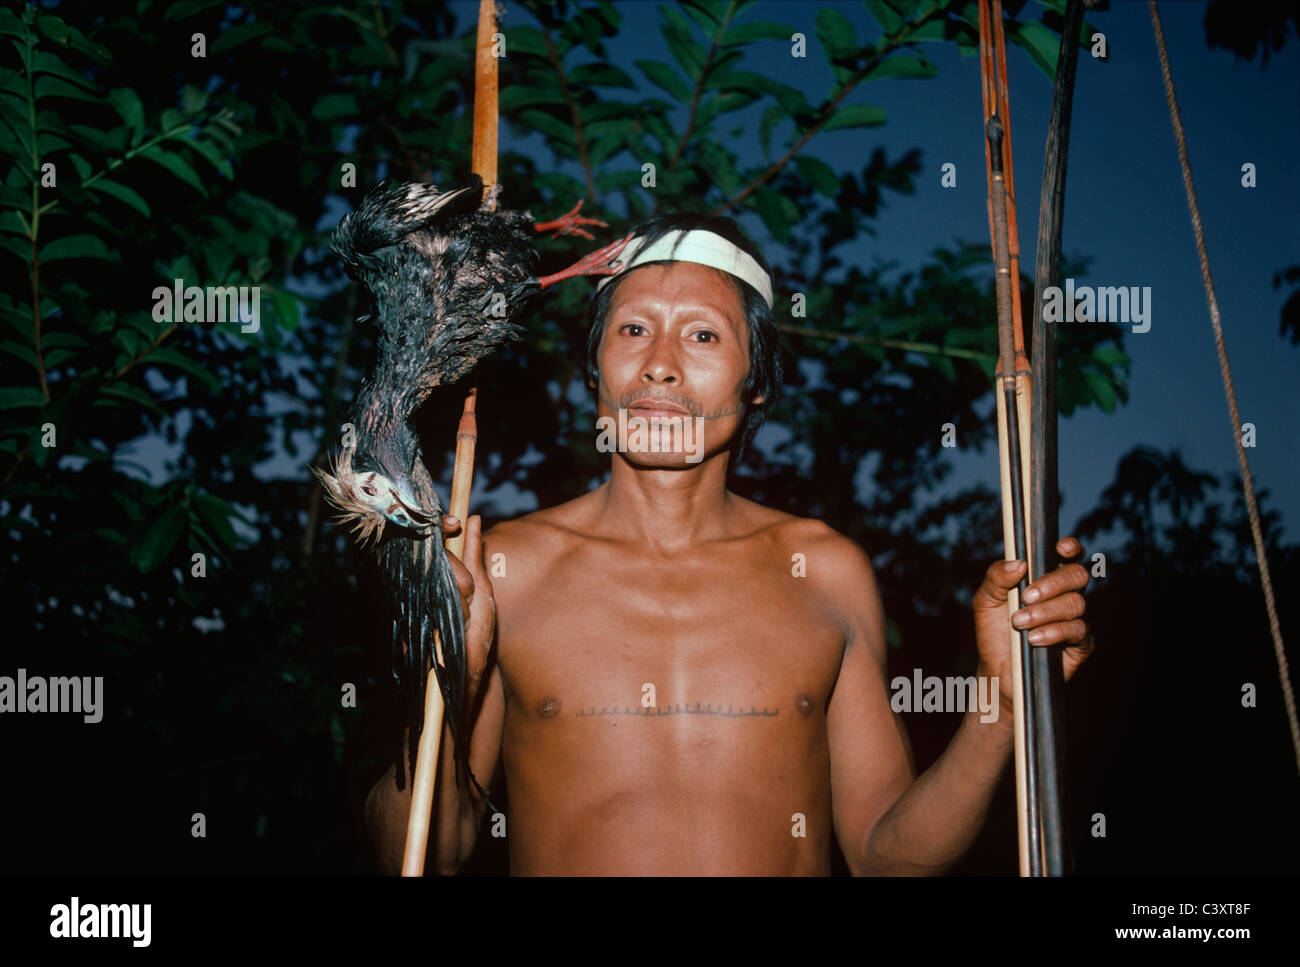 Matses tribesman avec un canard (piping guan) de l'amazone tué avec son arc et flèche. Matses indiens. Amazon, le Pérou. Banque D'Images